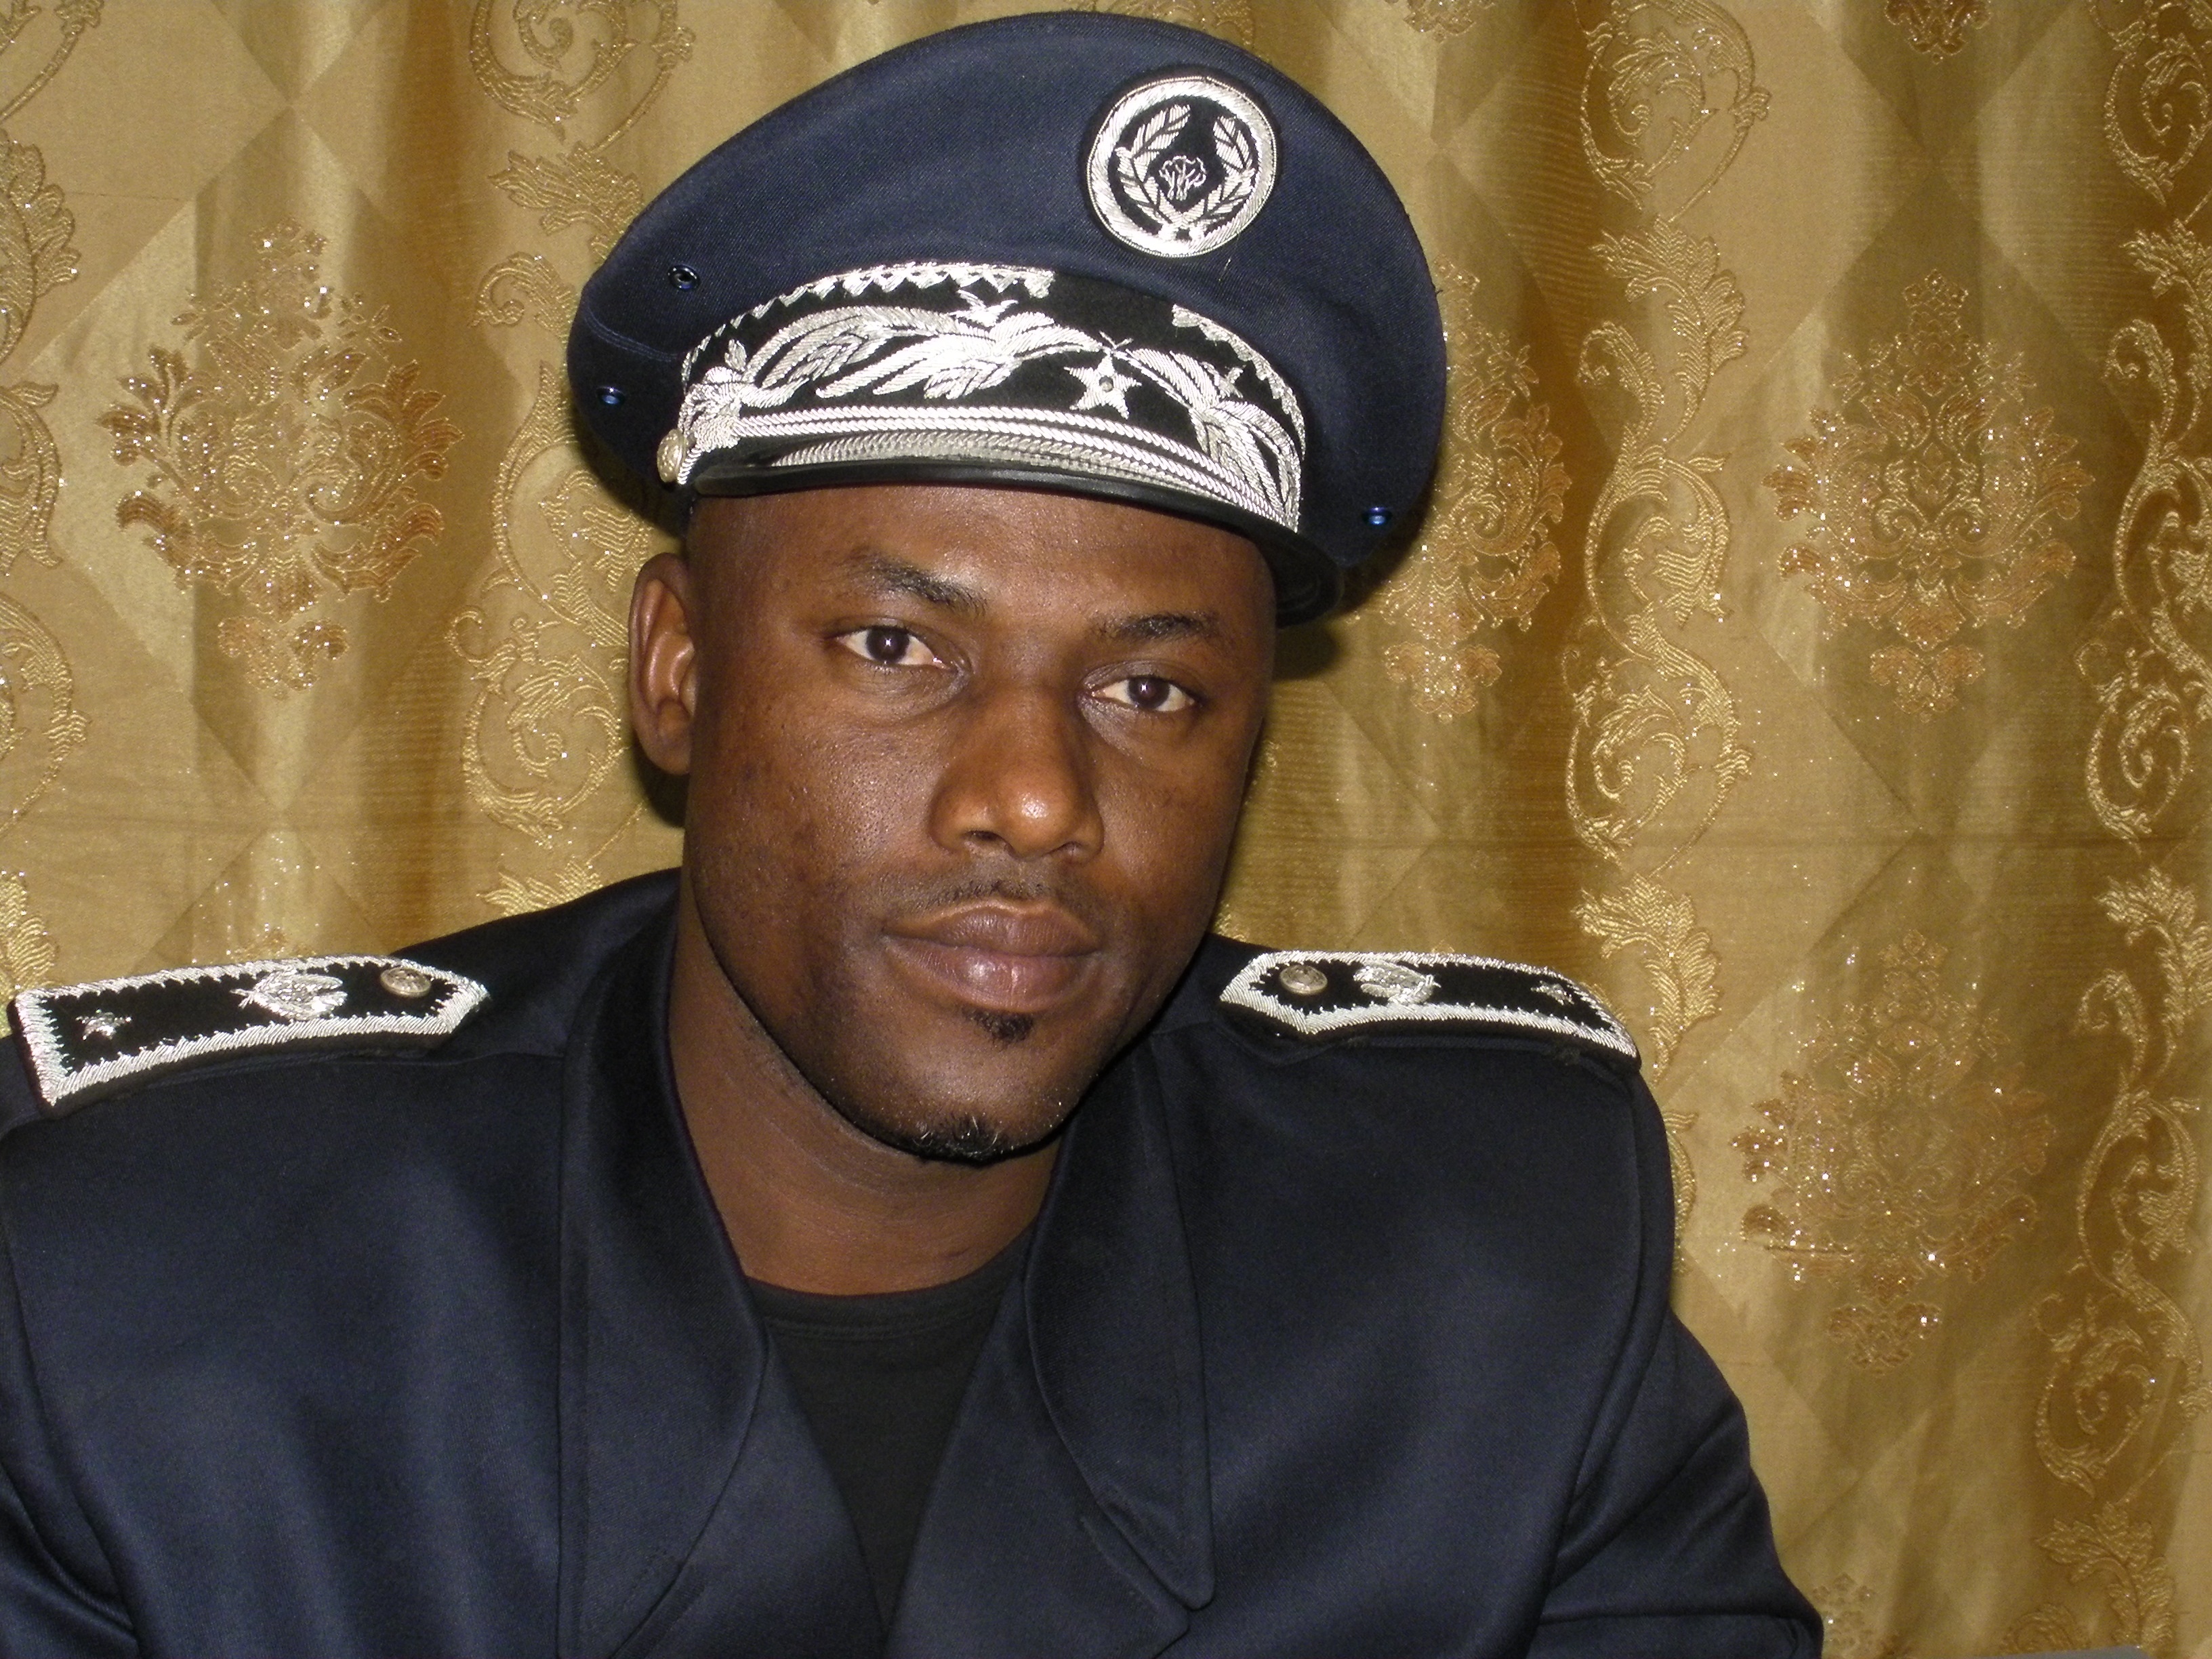 Police : Ousmane FALL quitte le commissariat de l’île